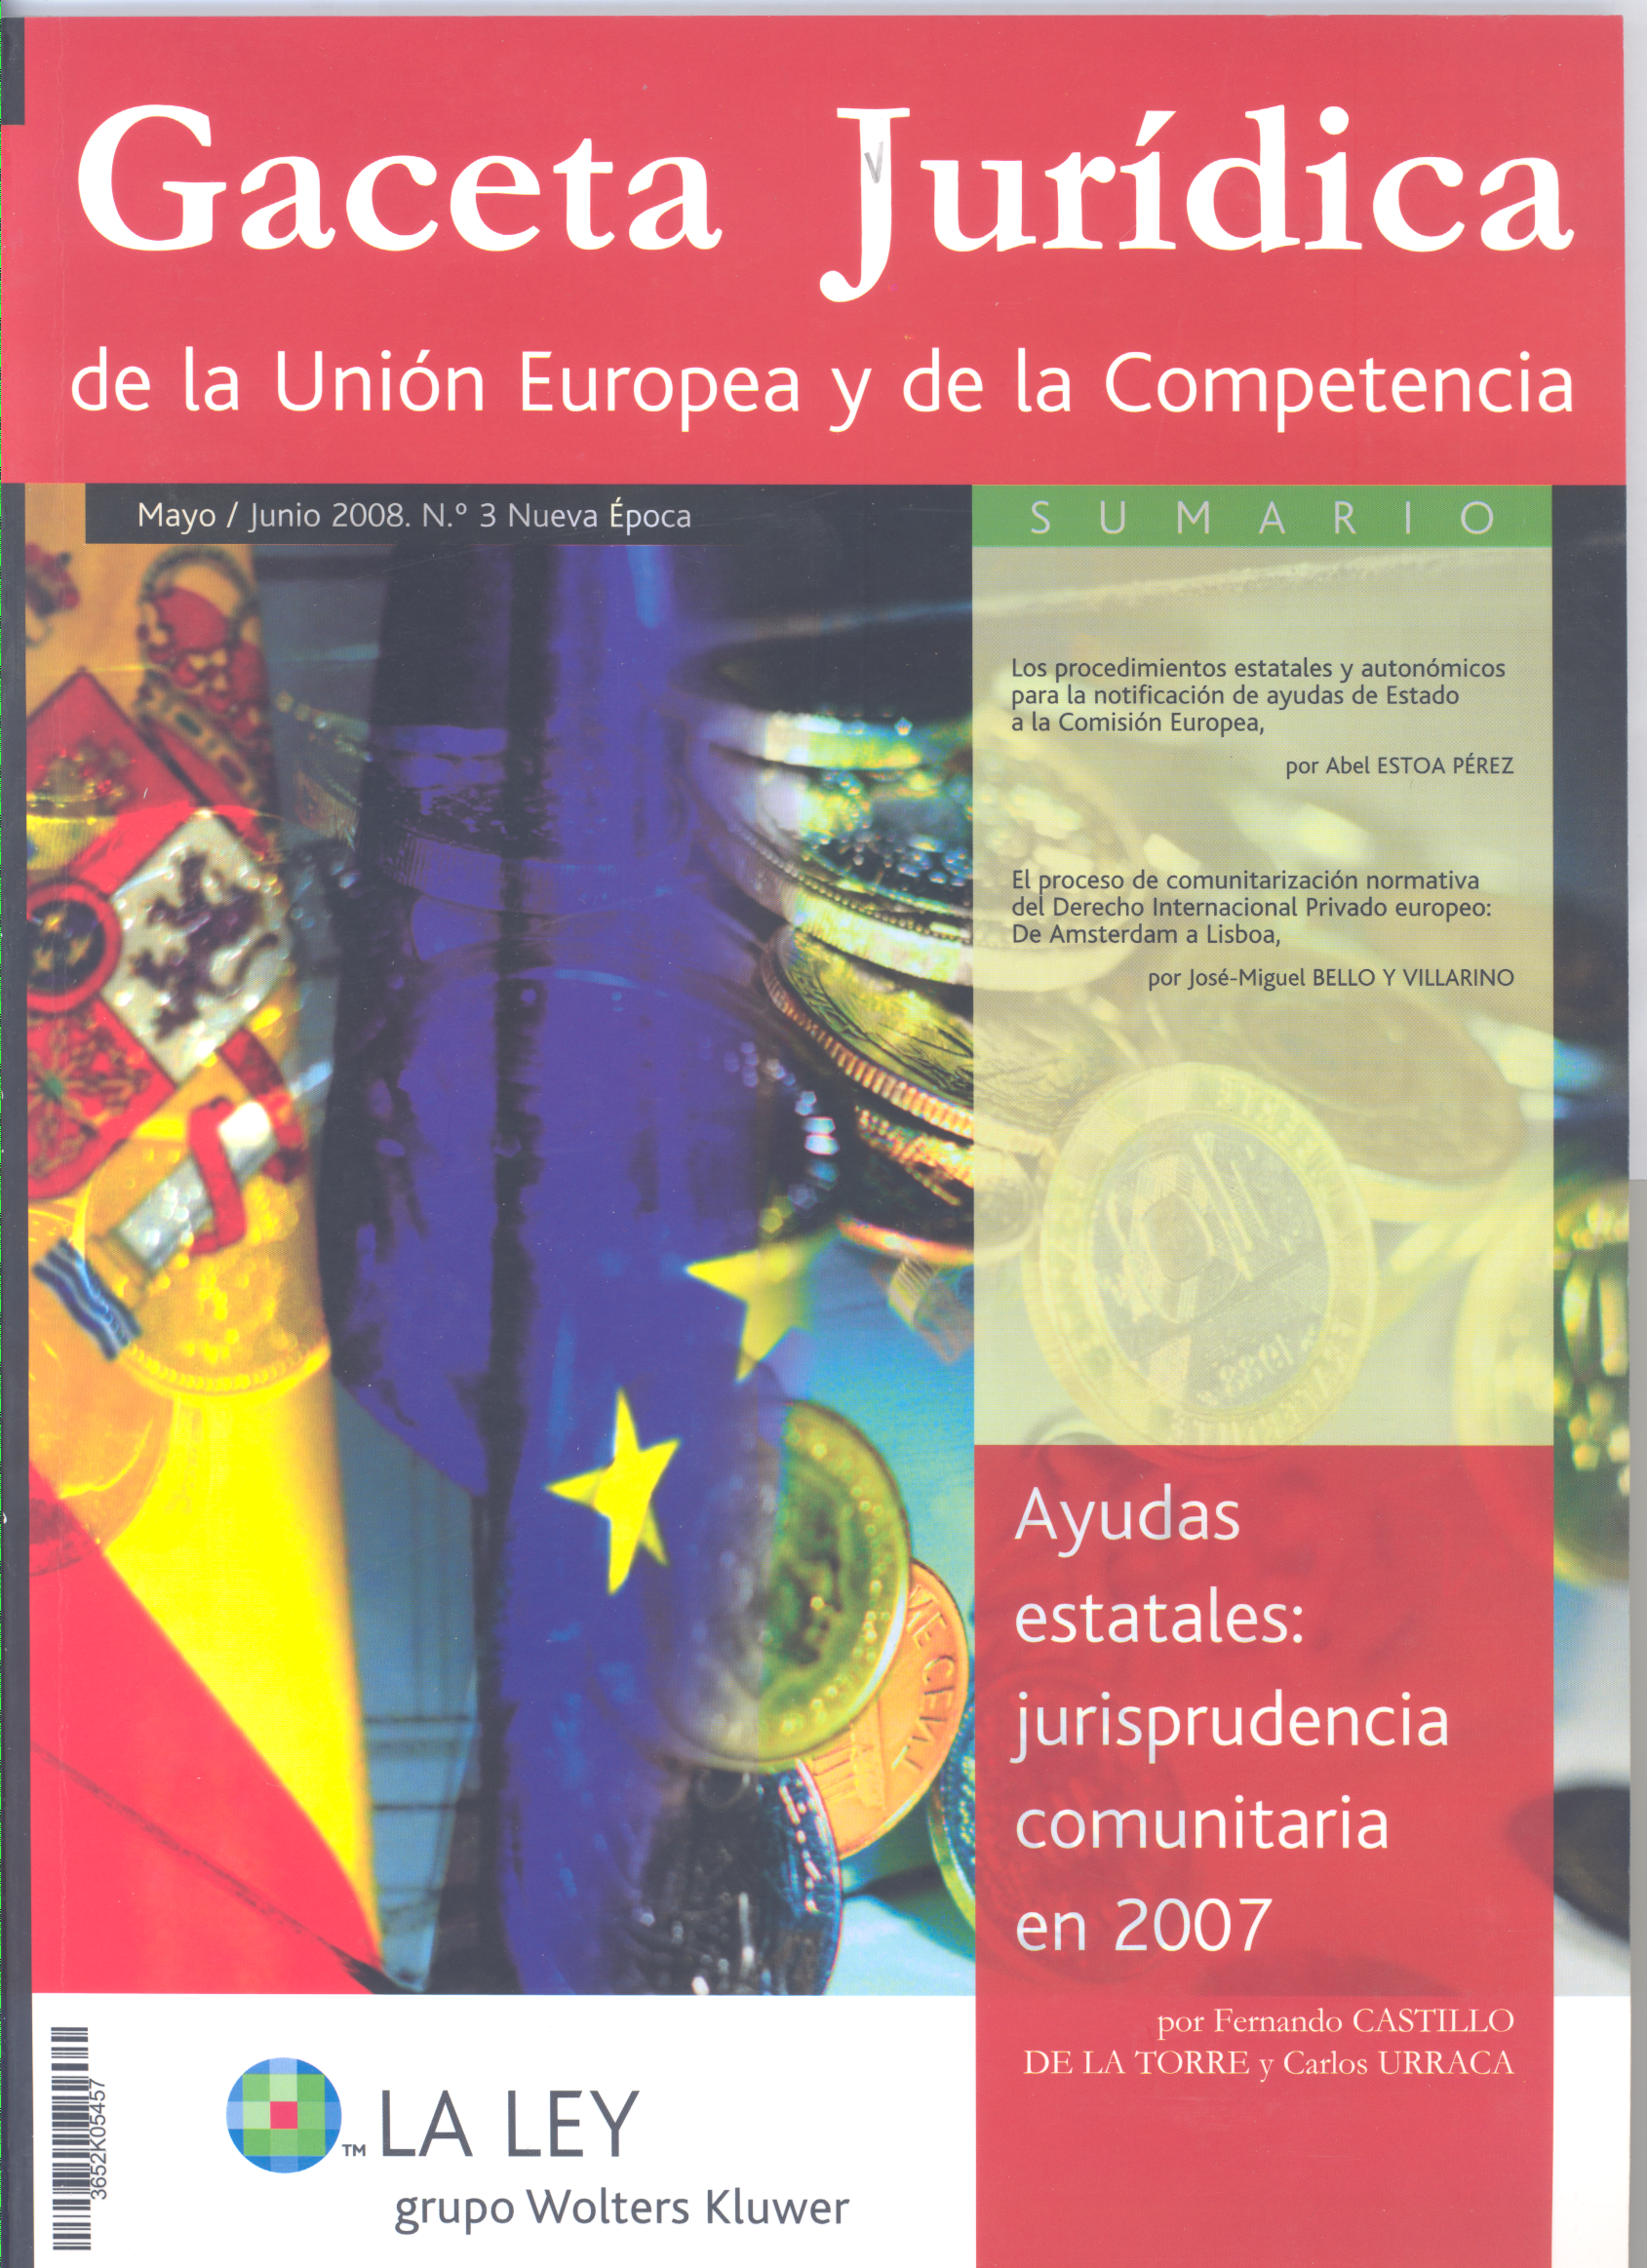 Los procedimientos estatales y autonómicos para la notificación de ayudas de Estado a la Comisión Europea